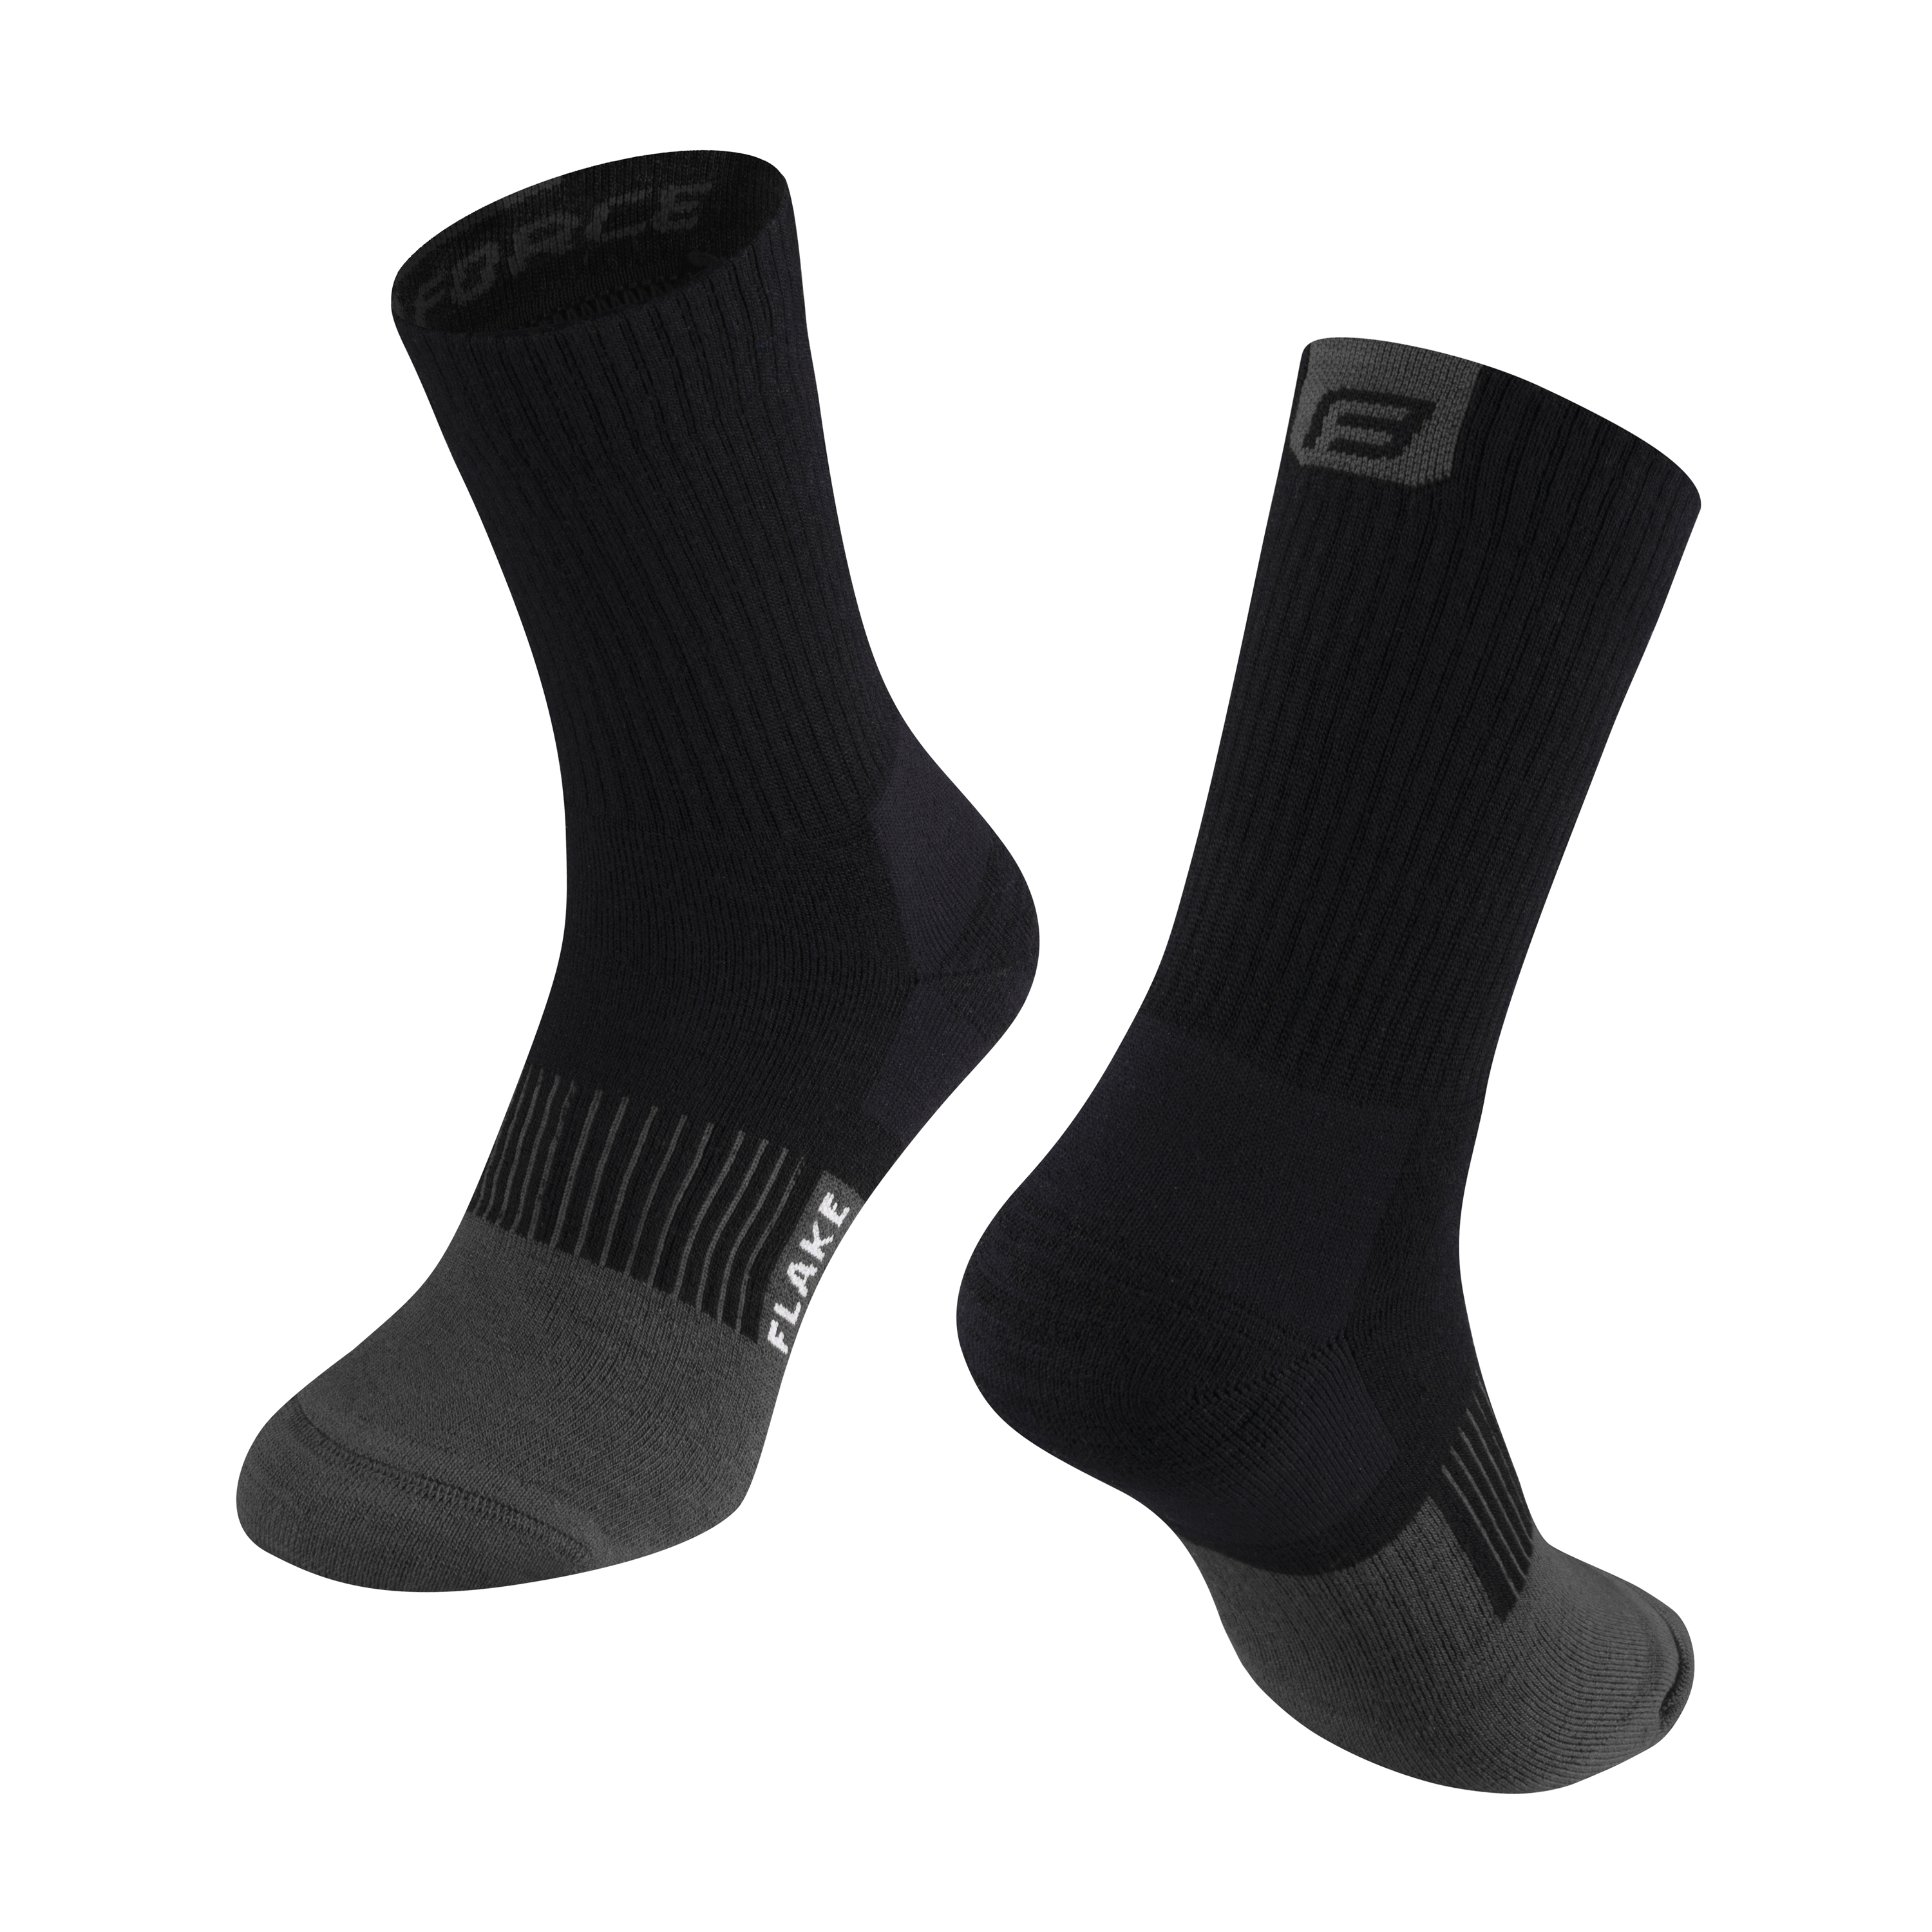 Zimní ponožky FORCE FLAKE černo-šedé L-XL